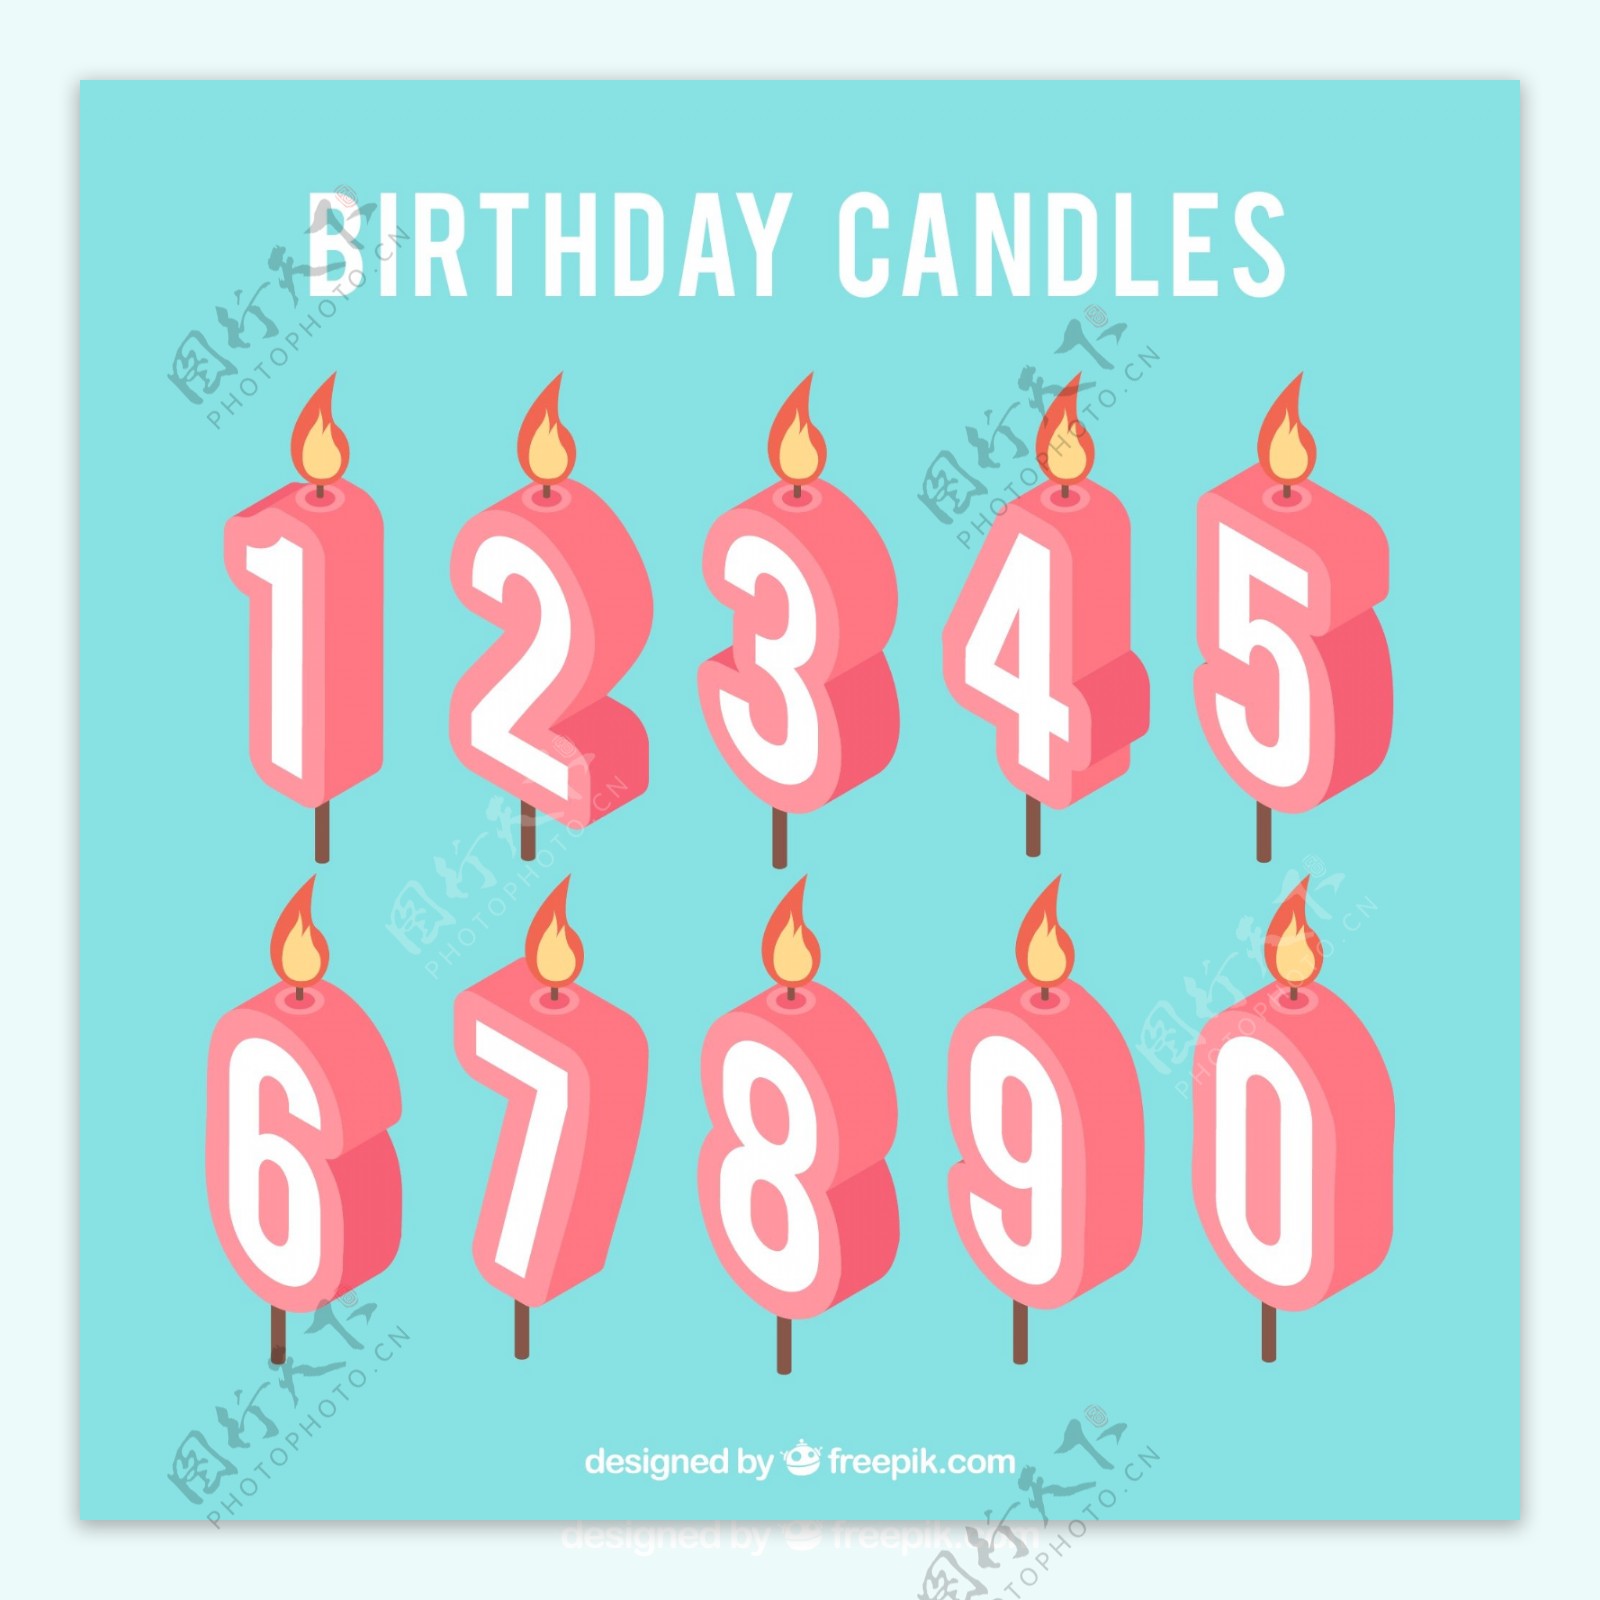 矢量素材生日蜡烛装饰图案数字元素集合